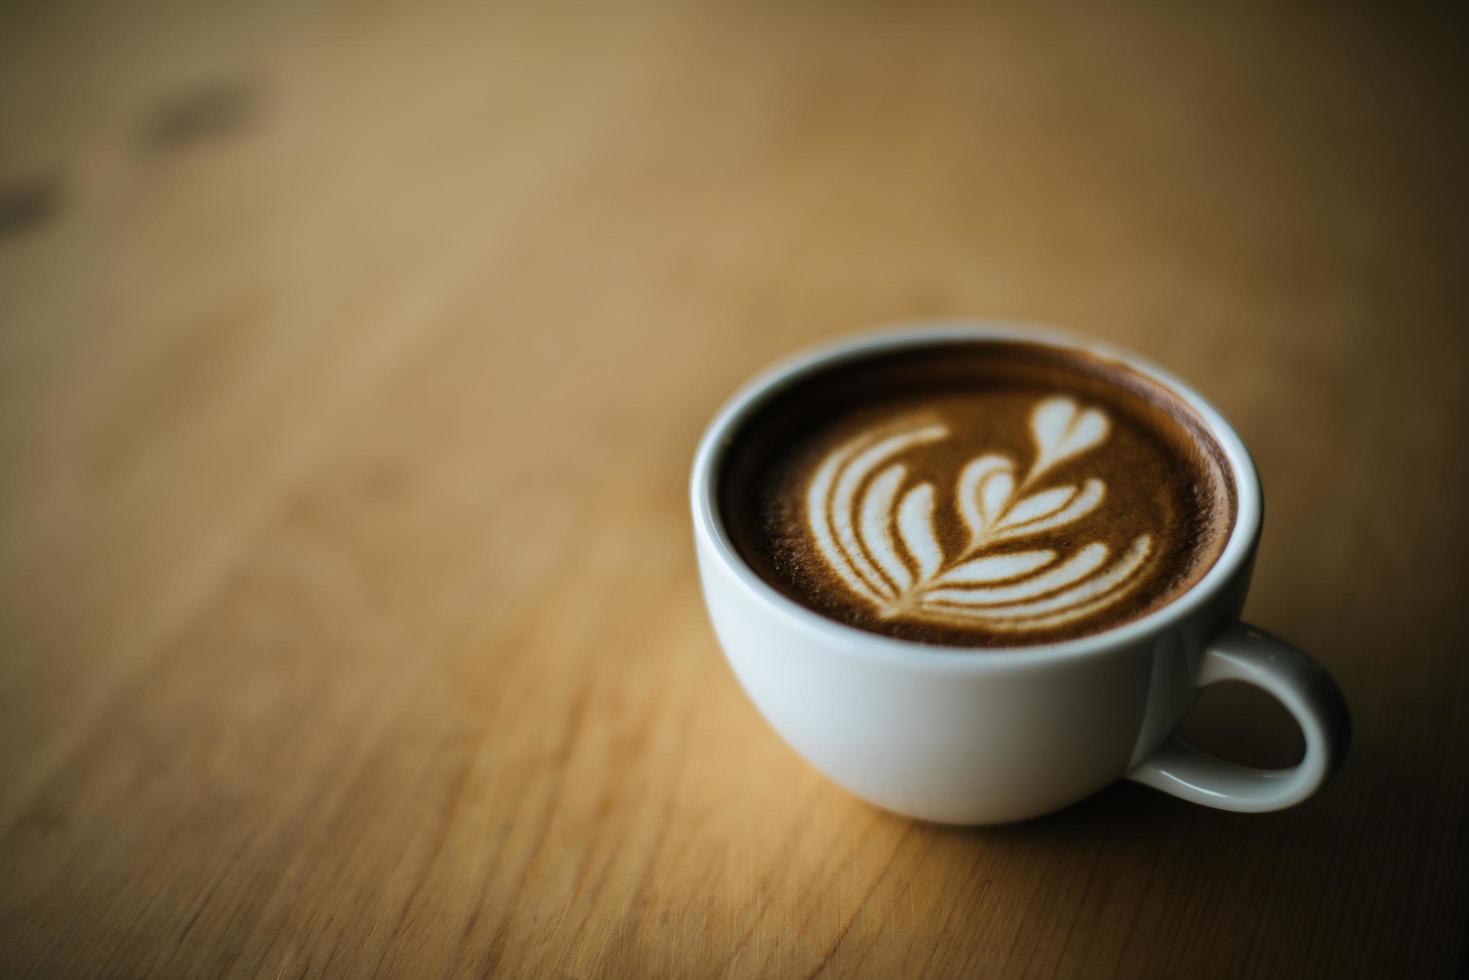 latte art in koffiekopje op de cafétafel foto